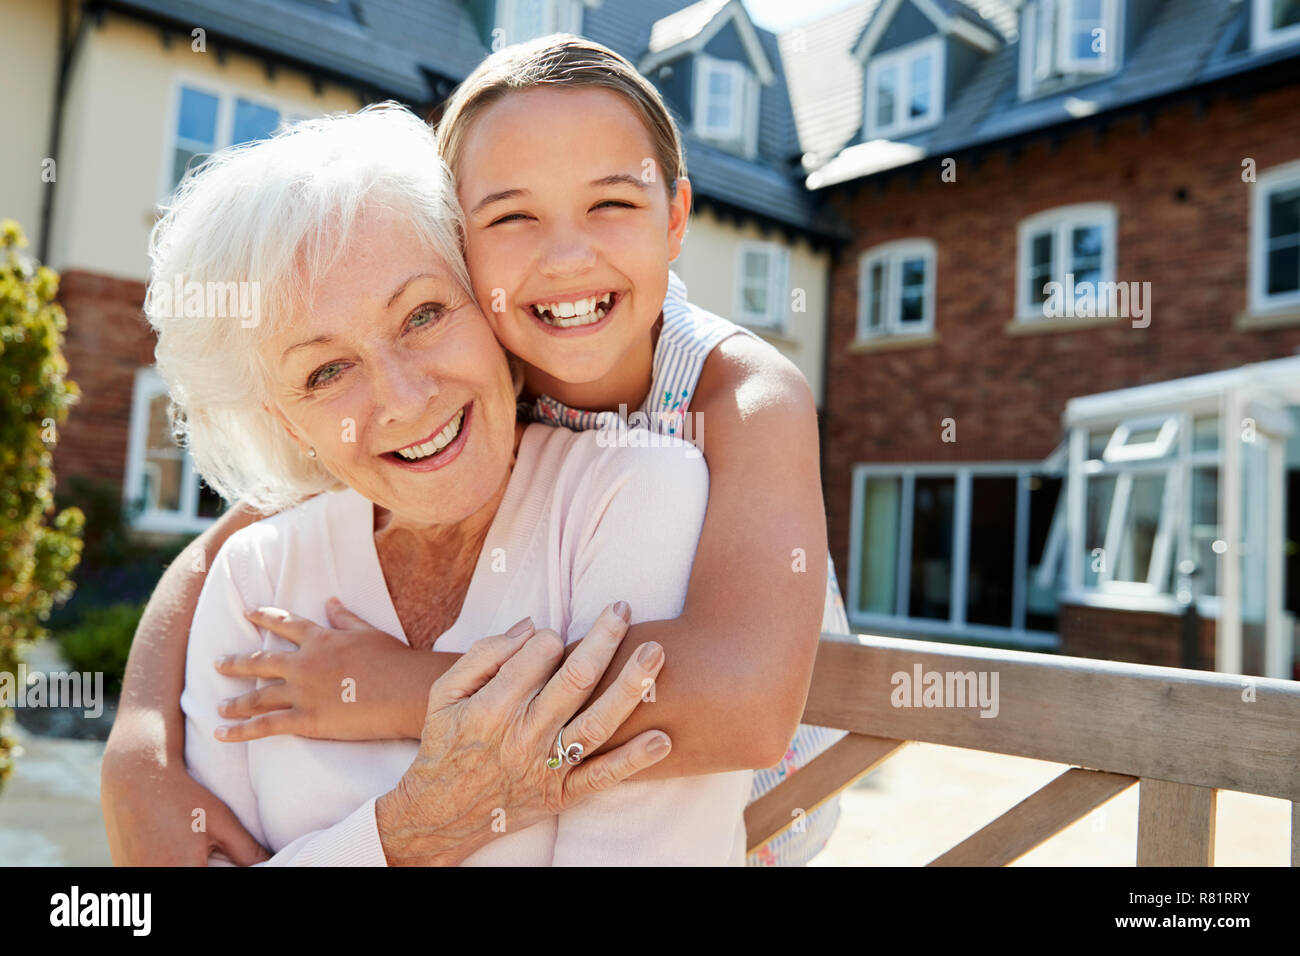 Ritratto del nipote abbracciando la nonna sul banco durante la visita alla casa di riposo Foto Stock